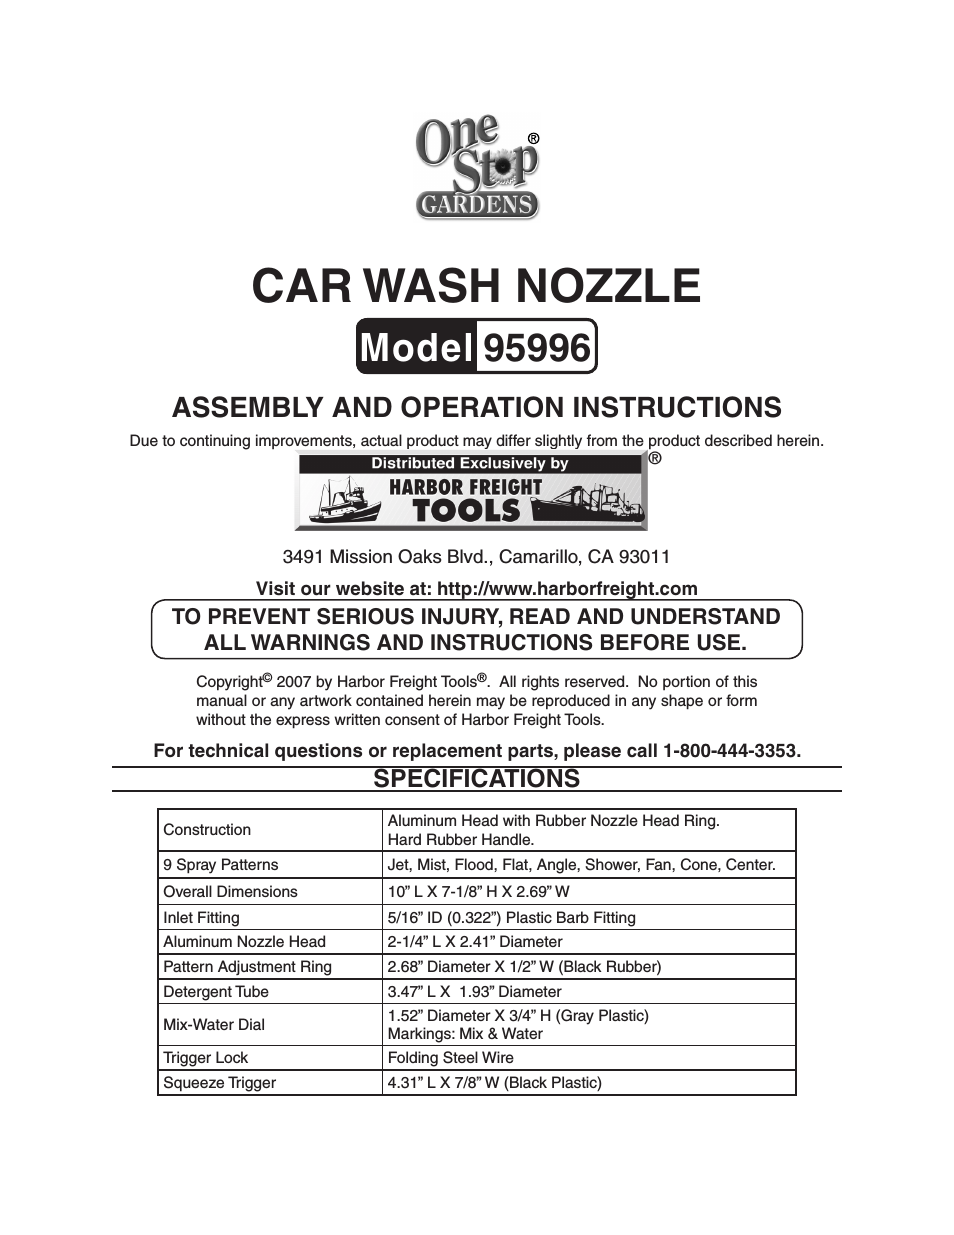 CAR WASH NOZZLE 95996